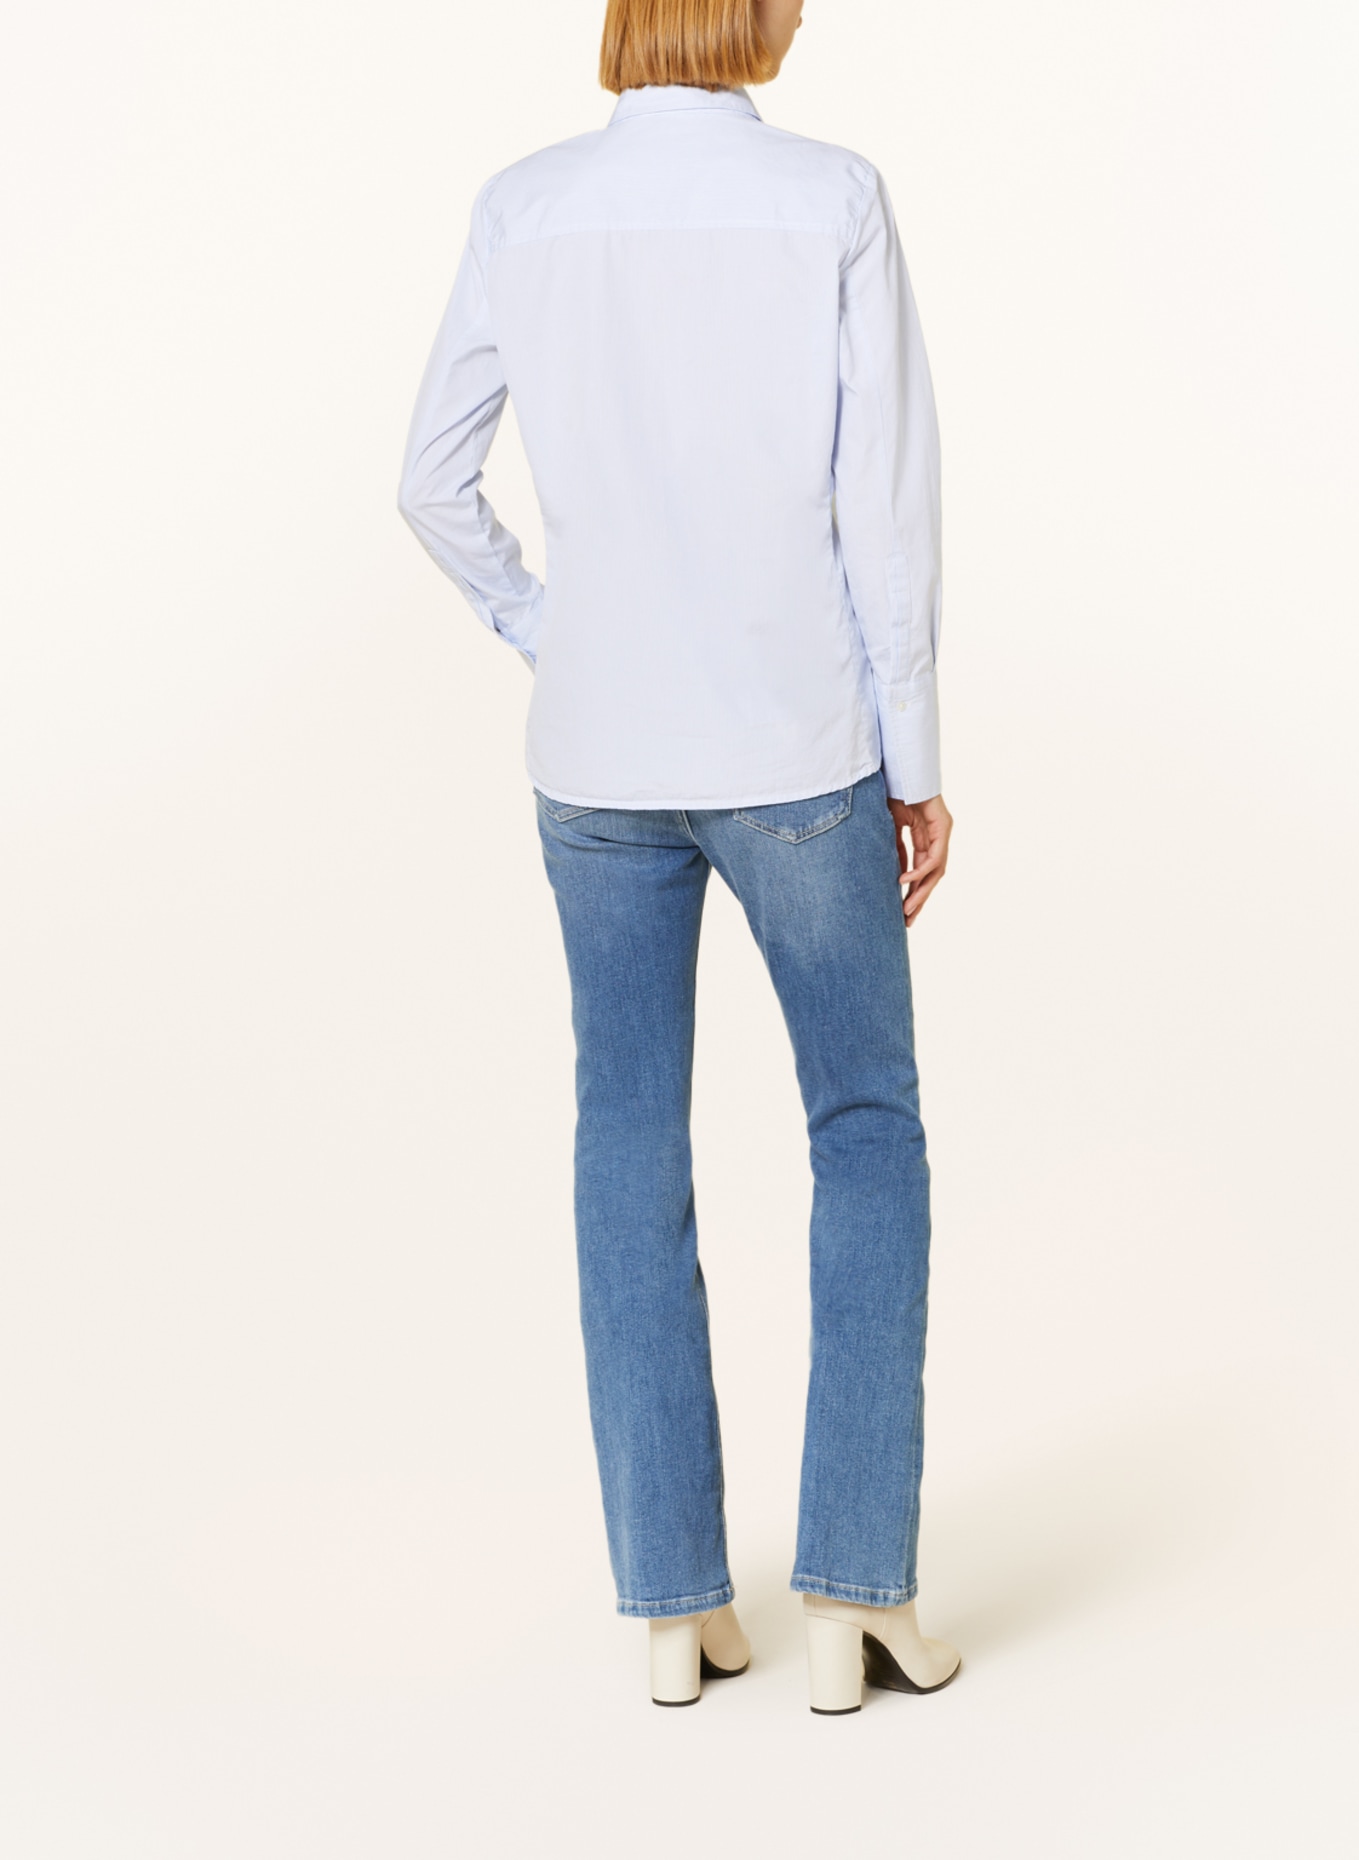 TONNO & PANNA Shirt blouse ELISABETH, Color: WHITE/ LIGHT BLUE (Image 3)